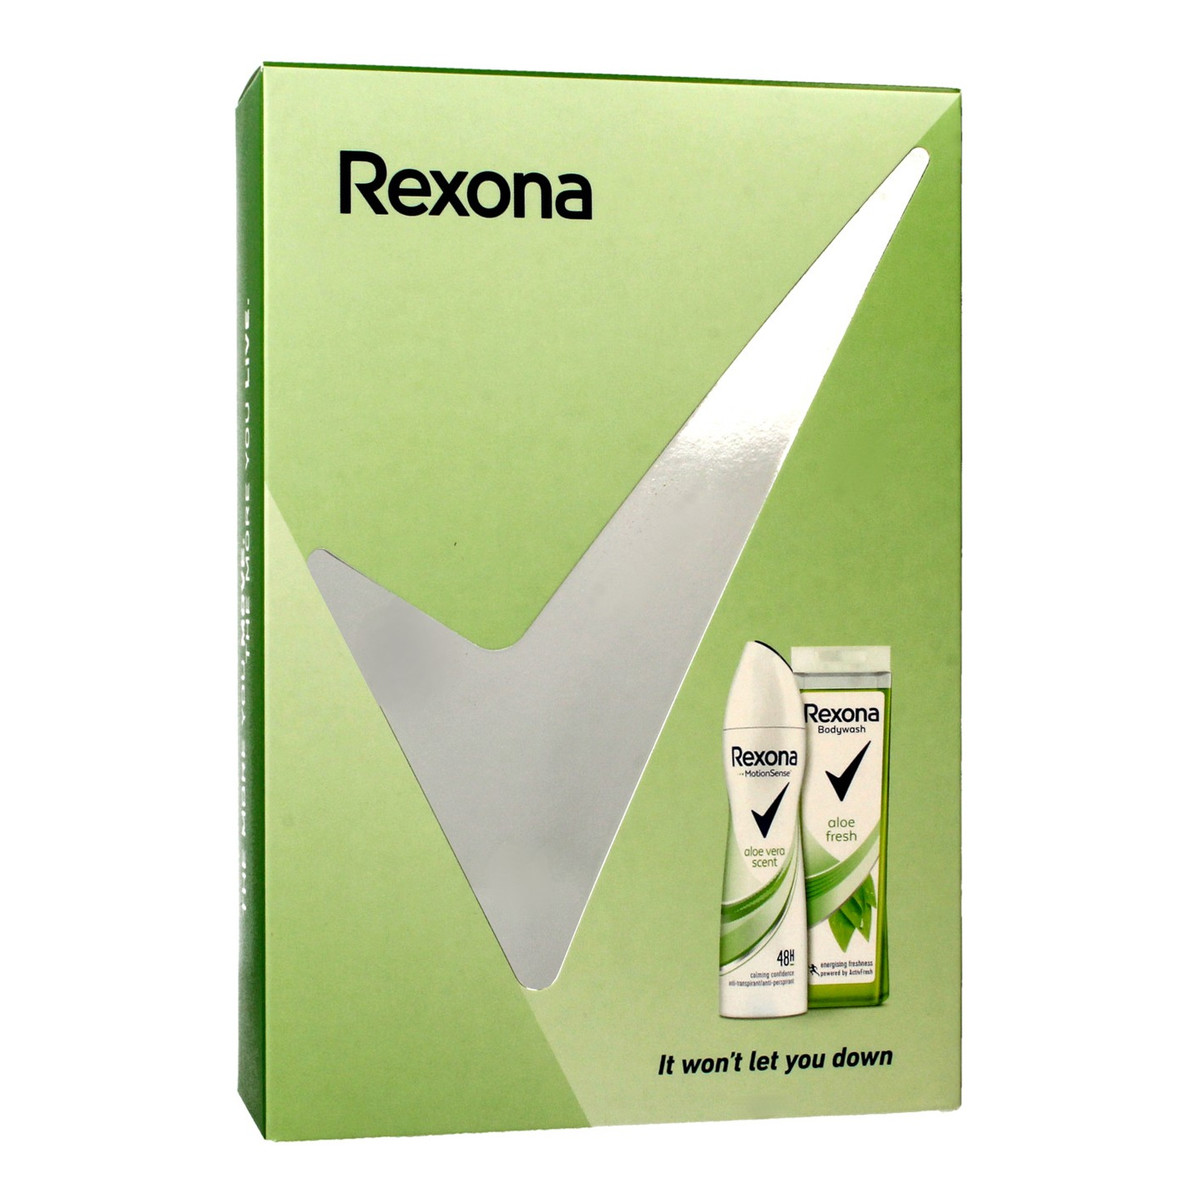 Rexona Aloe Vera i Freshness & Care Zestaw kosmetyków dezodorant spray 150ml+ żel pod prysznic 250ml 400ml